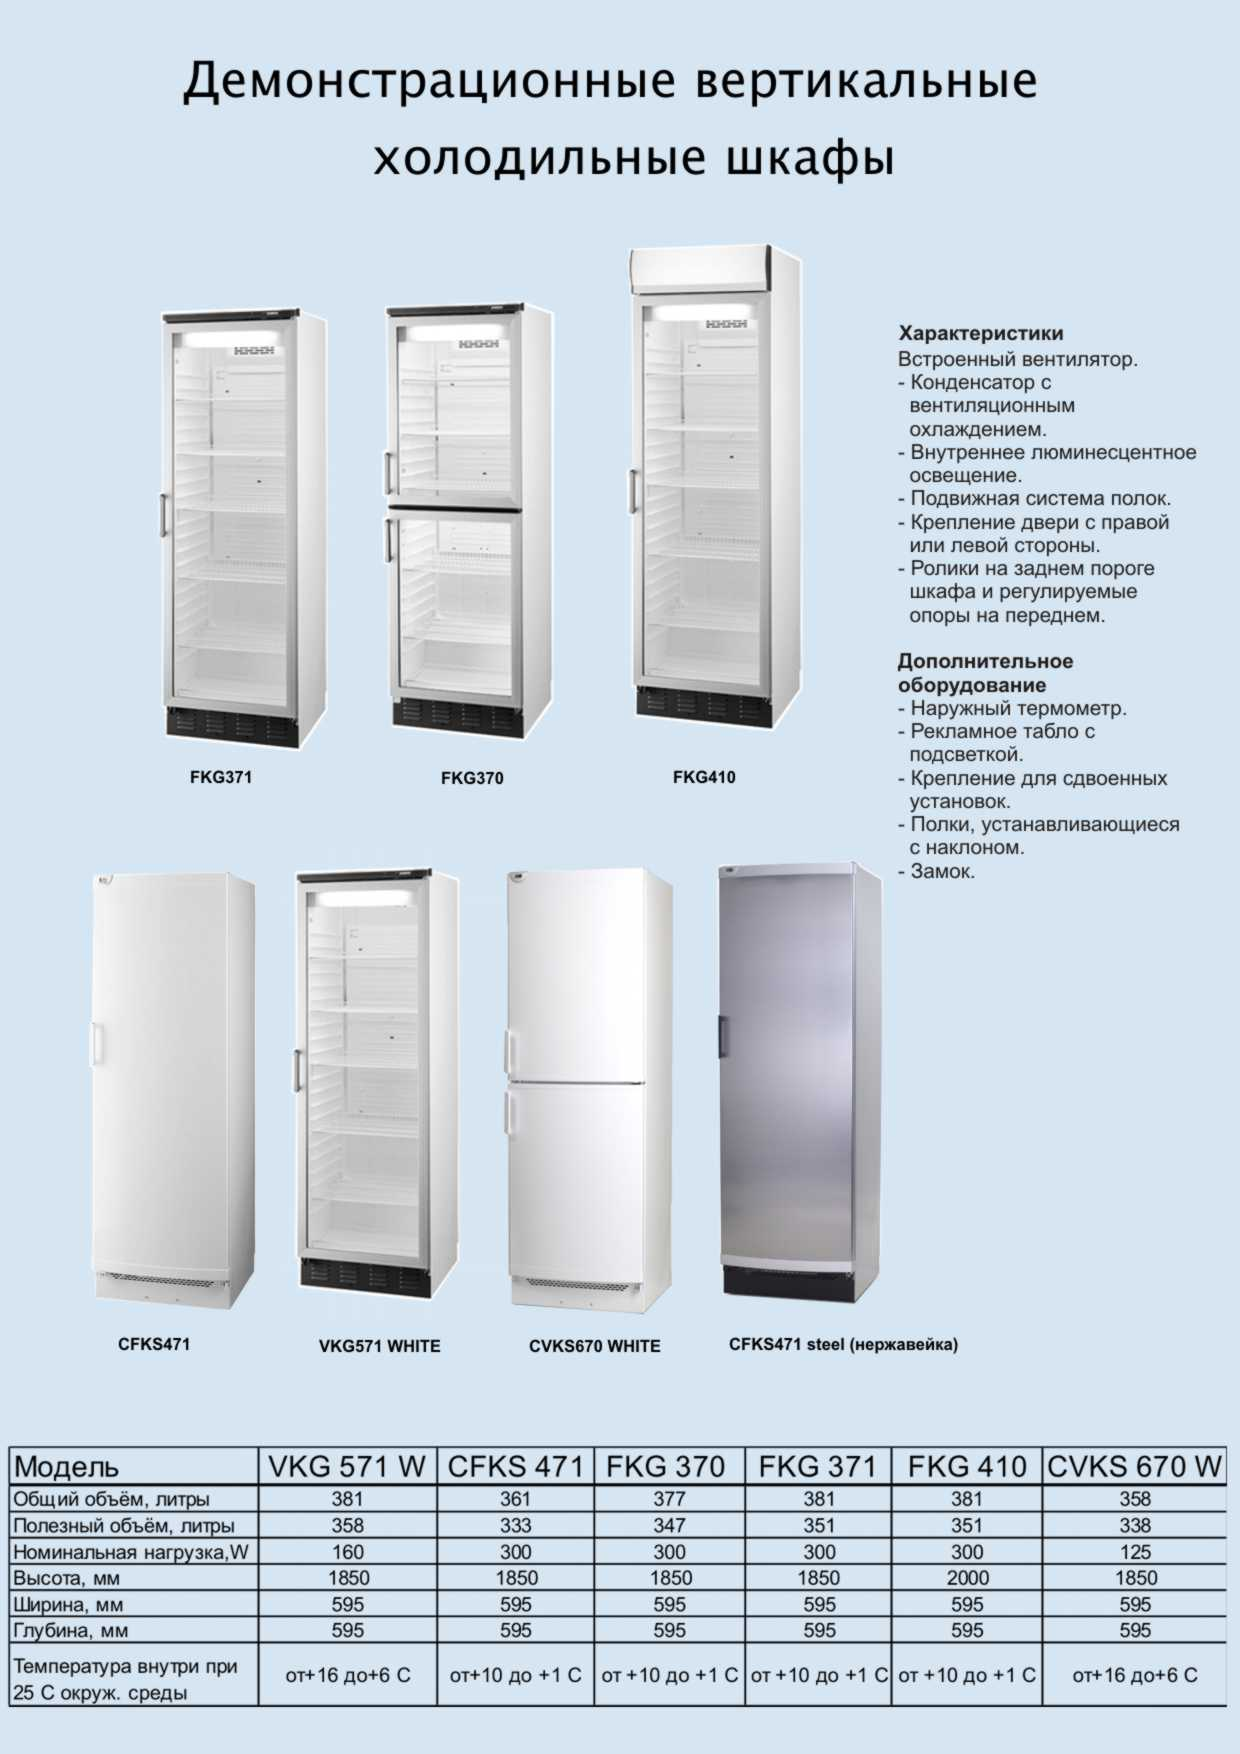 Технические характеристики холодильных шкафов